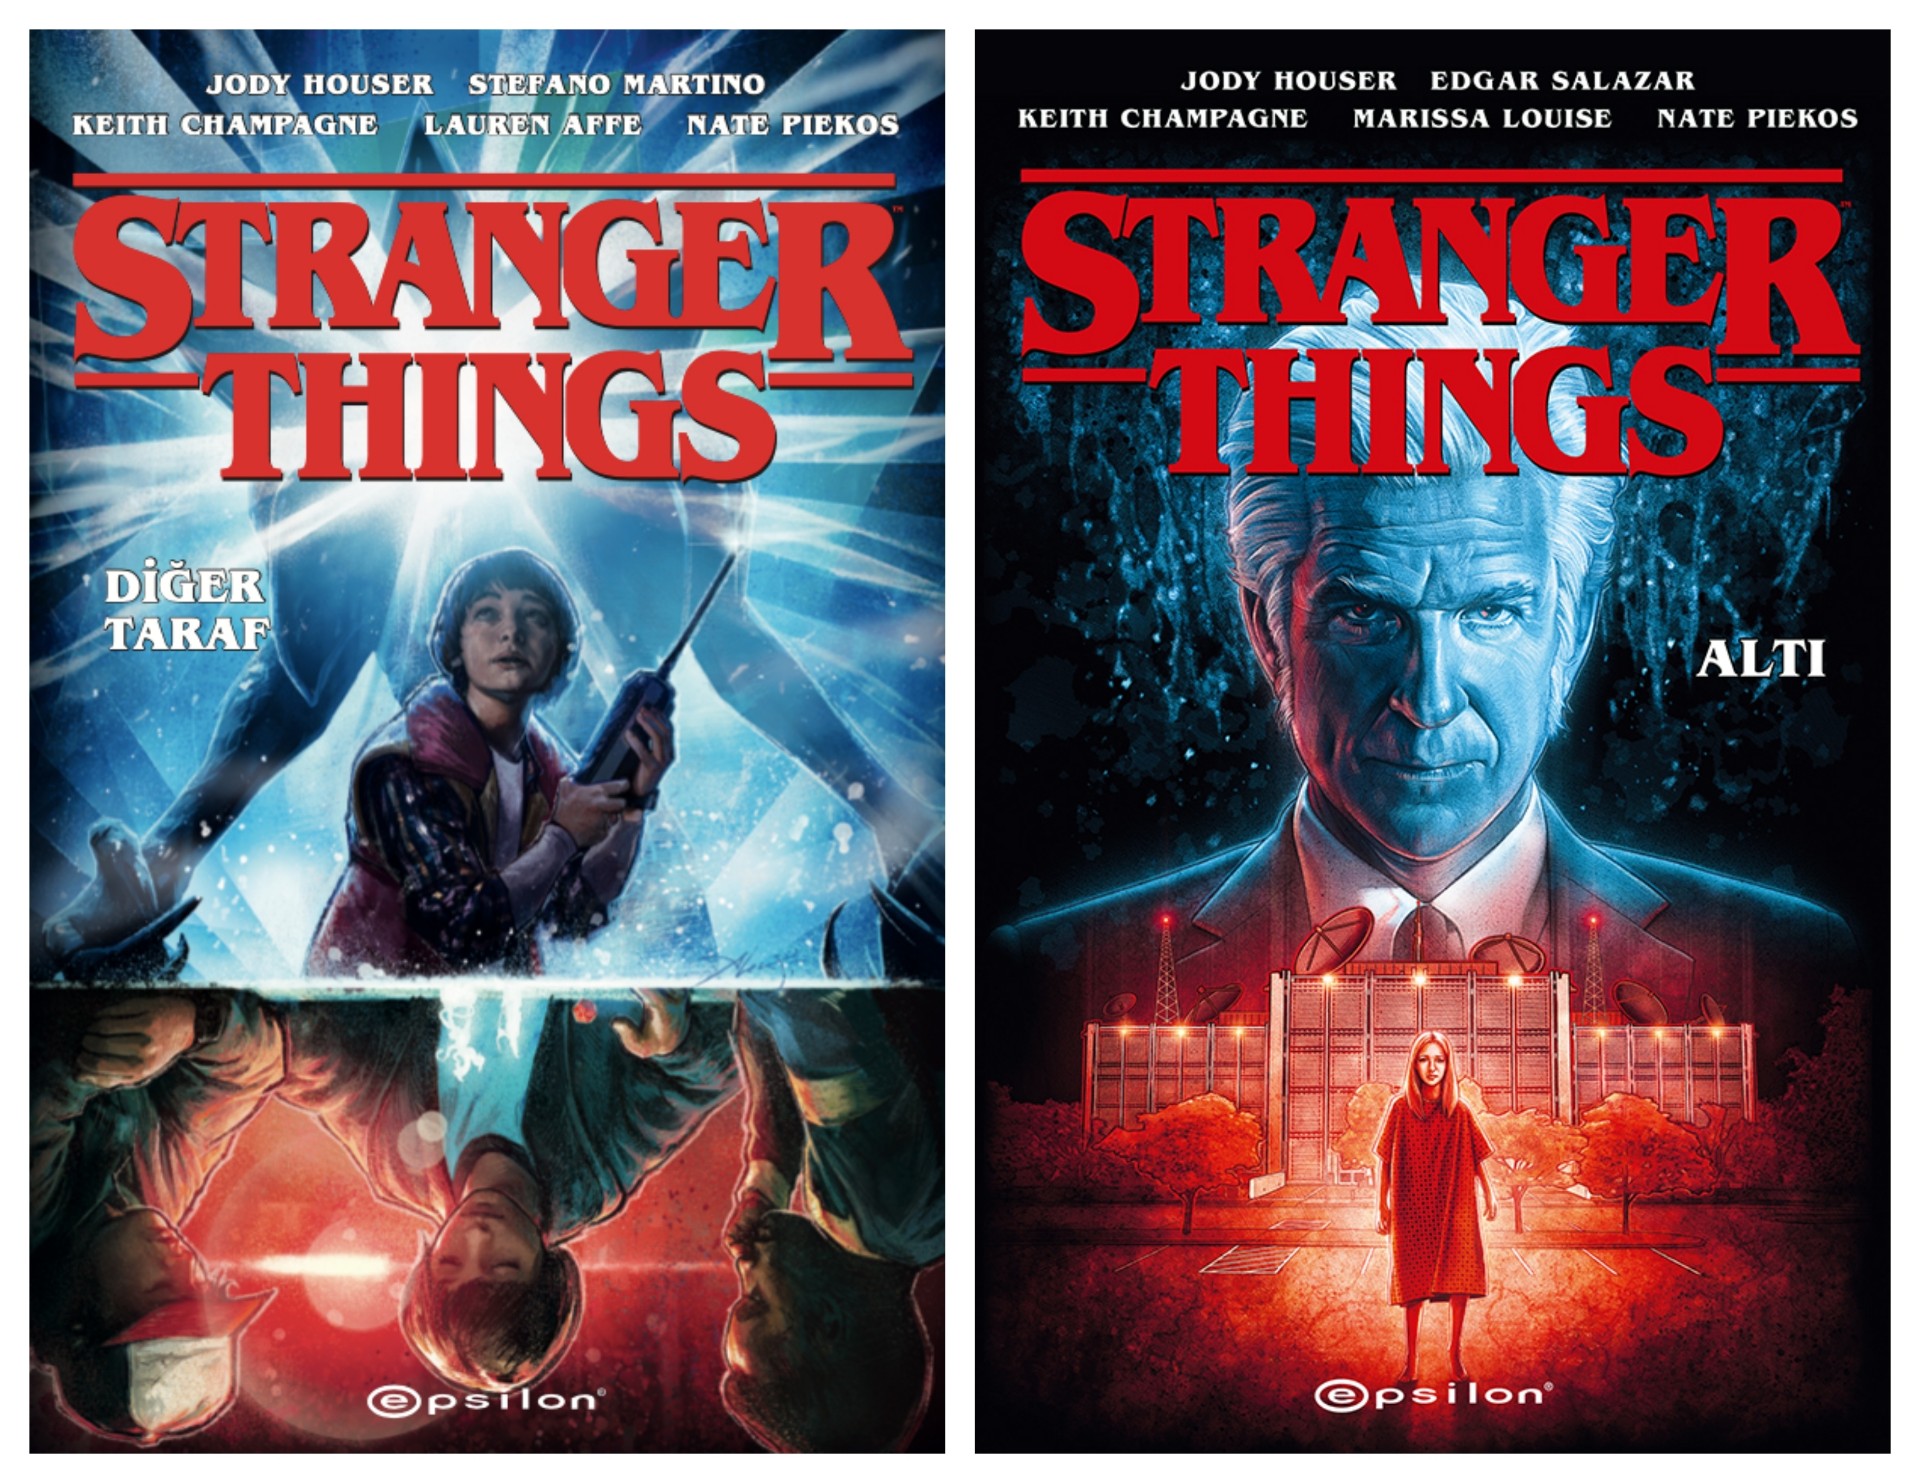 Stranger Things efsanesi çizgi romanlarla sürüyor: Diğer Taraf & Altı